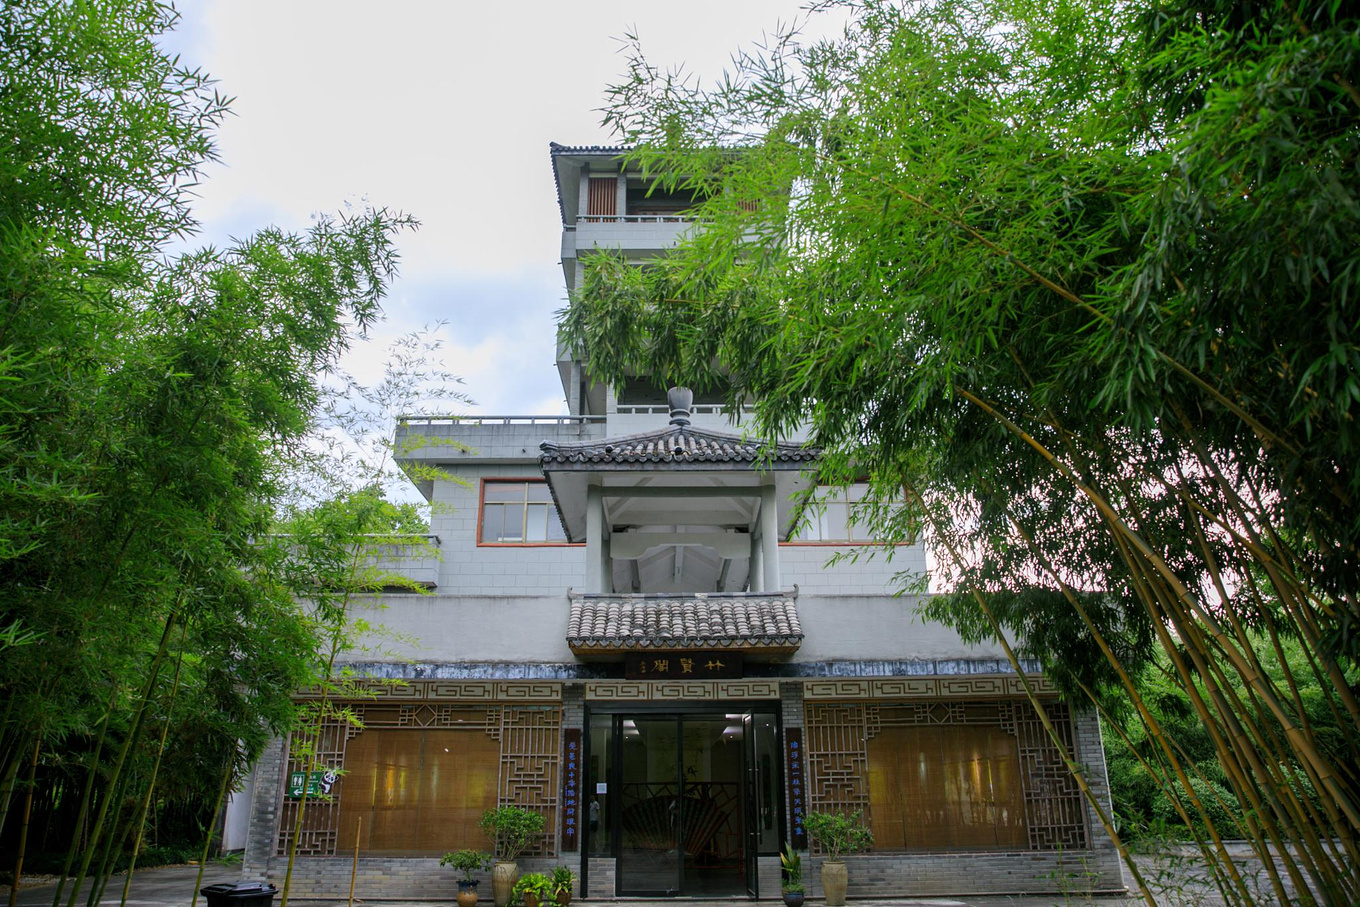 竹子博物馆 - 竹博园 - 安吉竹子博览园有限责任公司